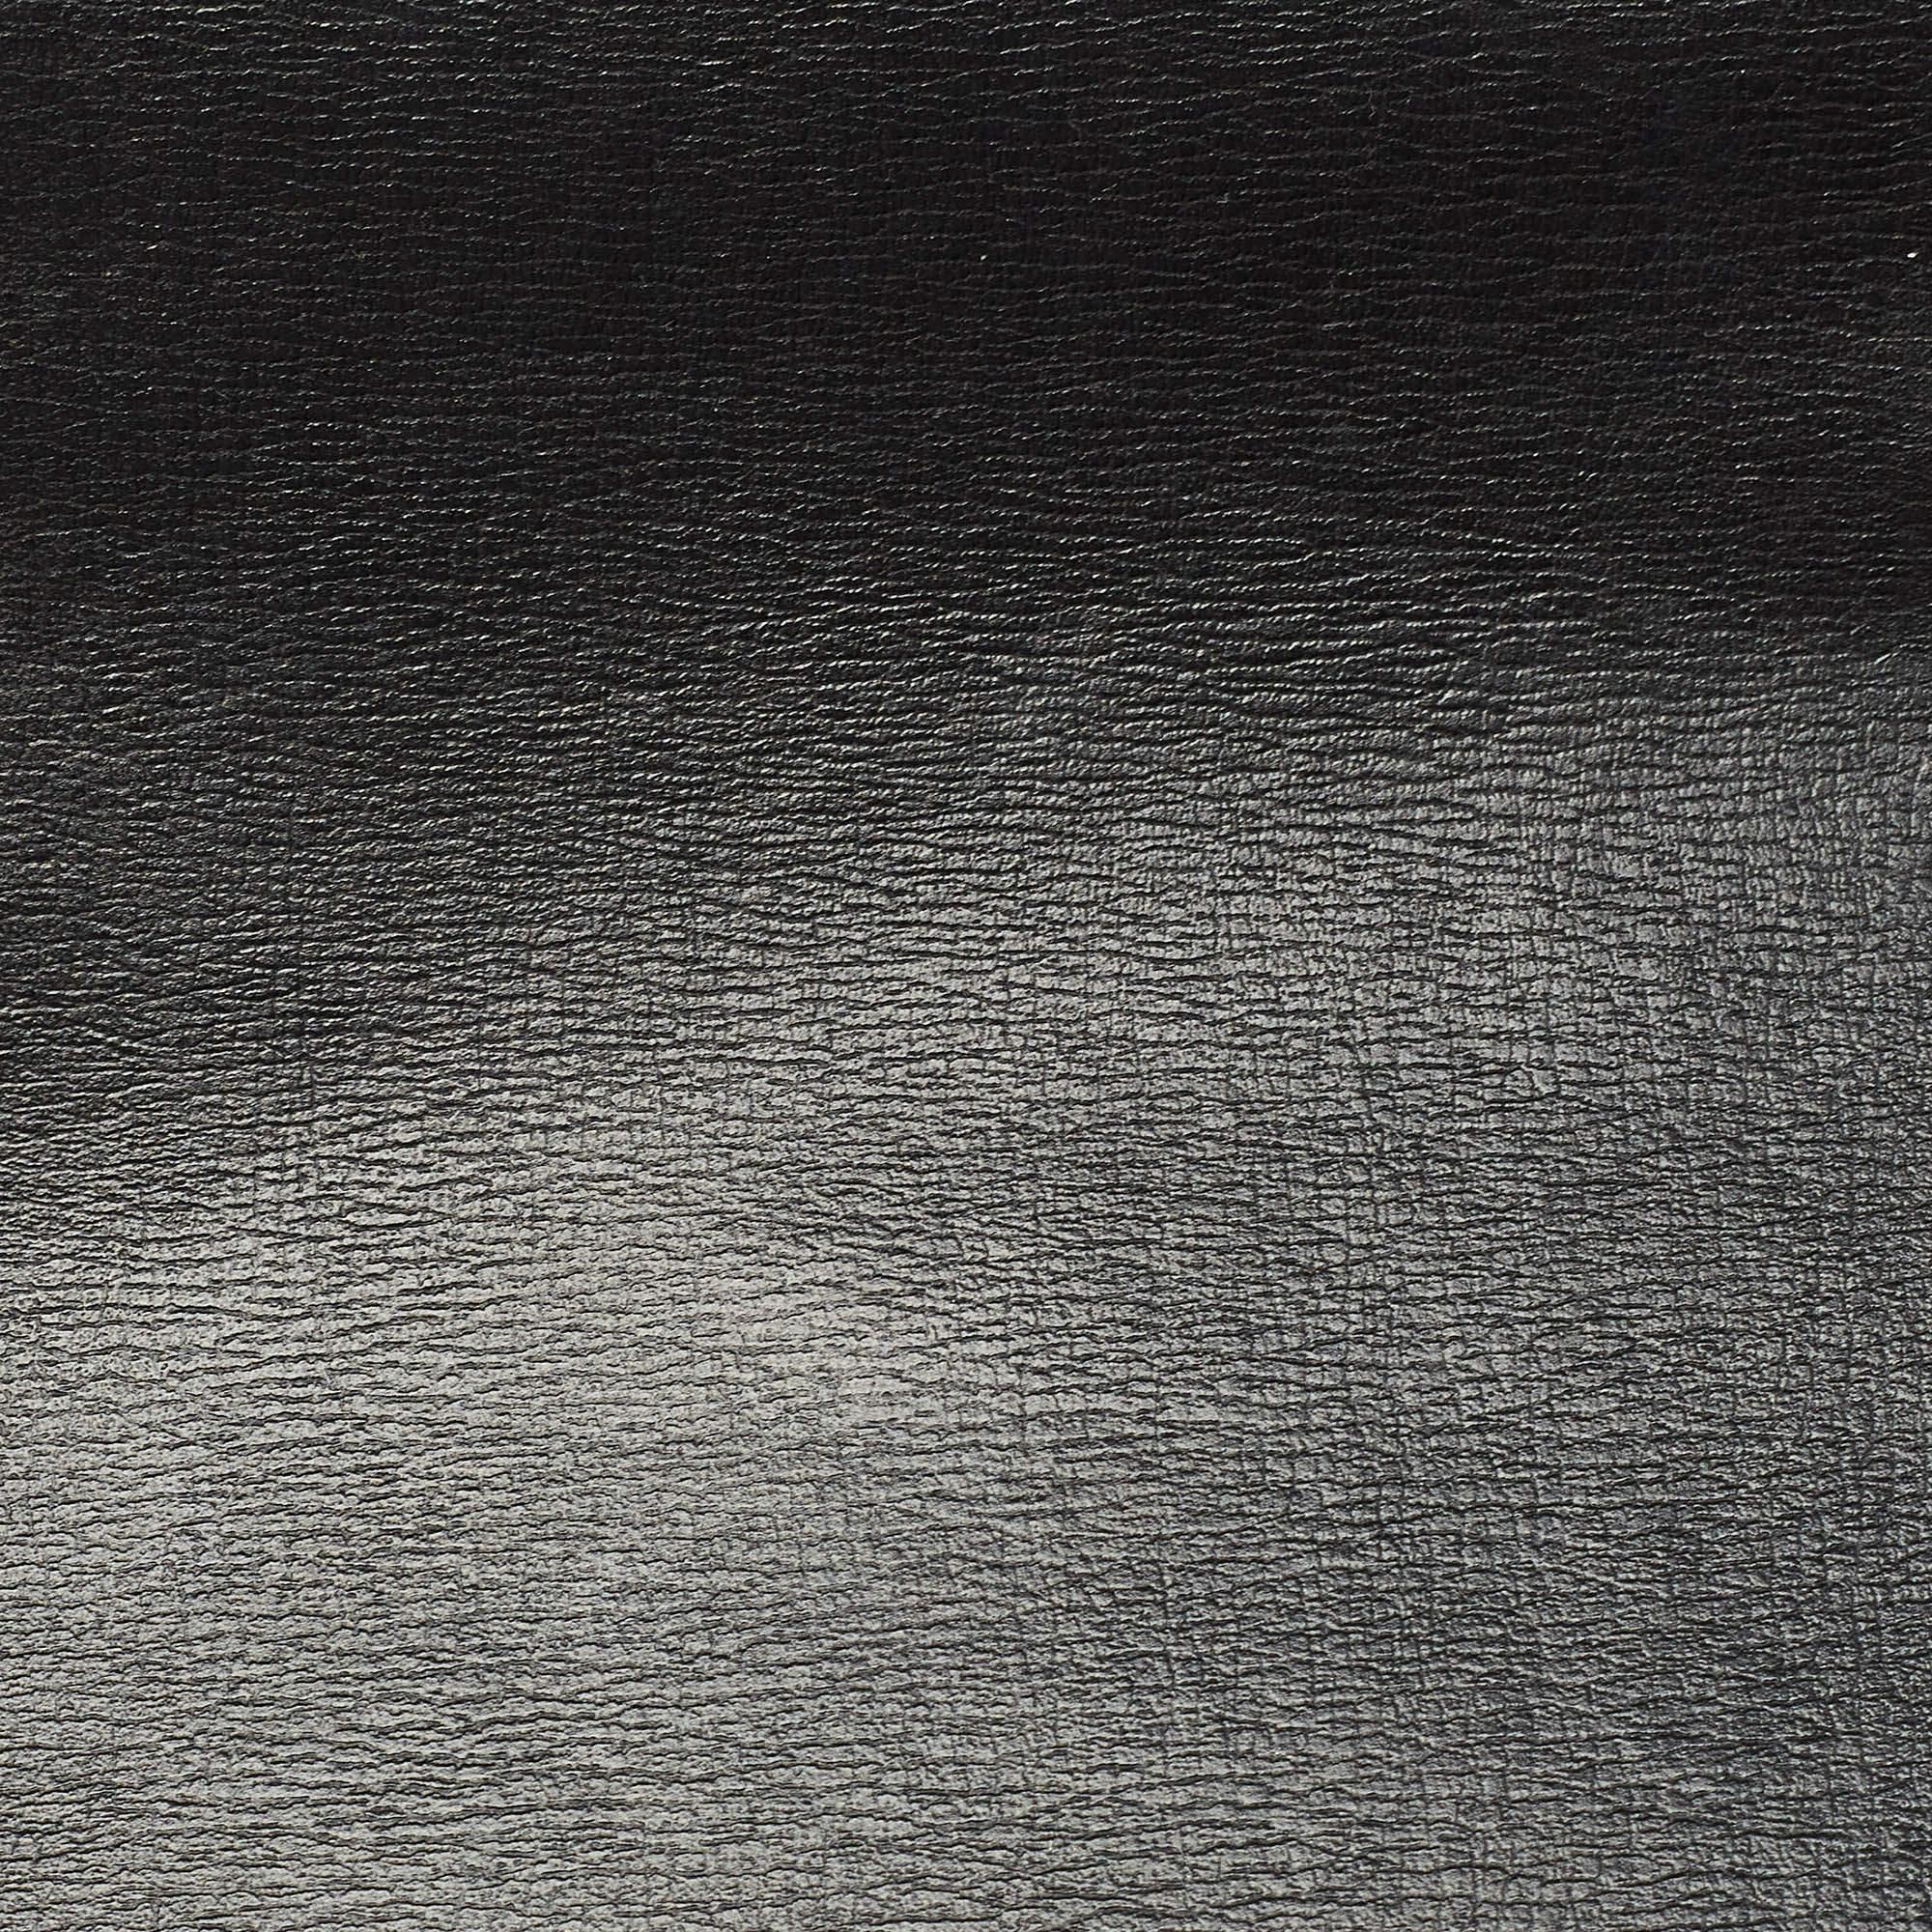 Saint Laurent Black Leather Sunset Chain Wallet For Sale 6